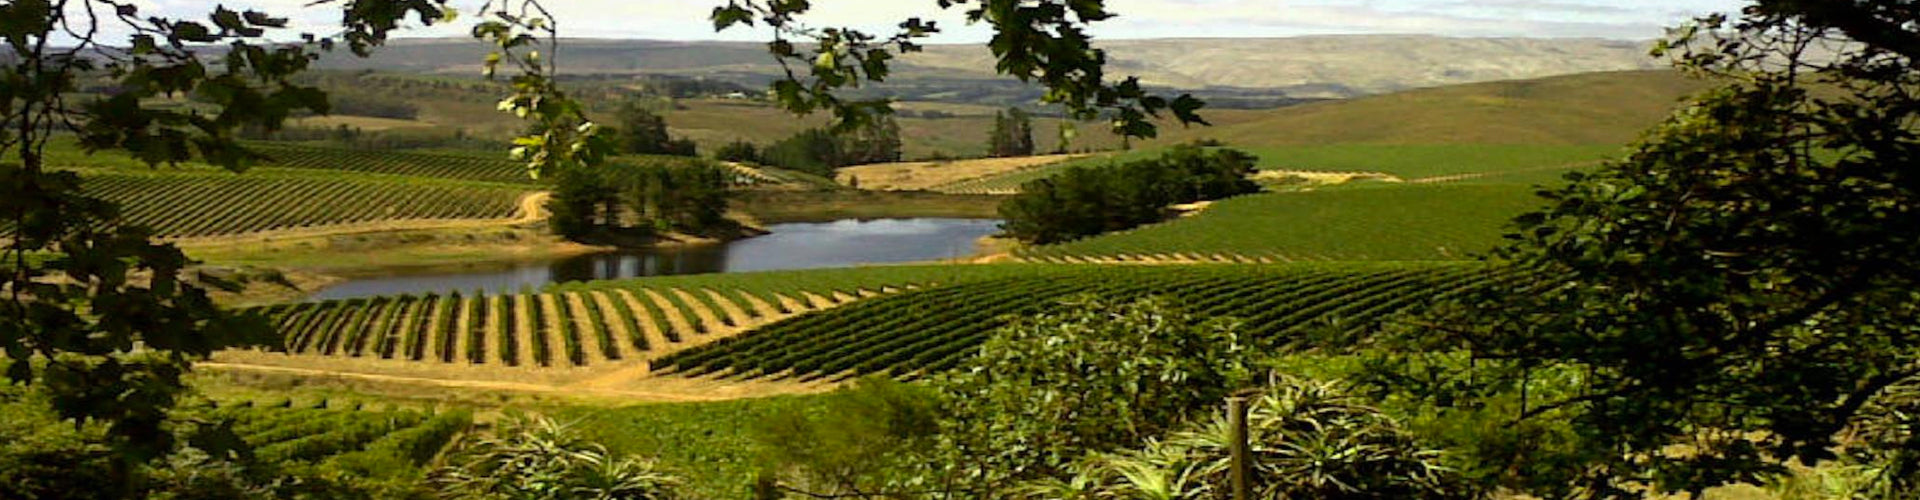 Richard Kershaw Wines Vineyards in Elgin, South Africa